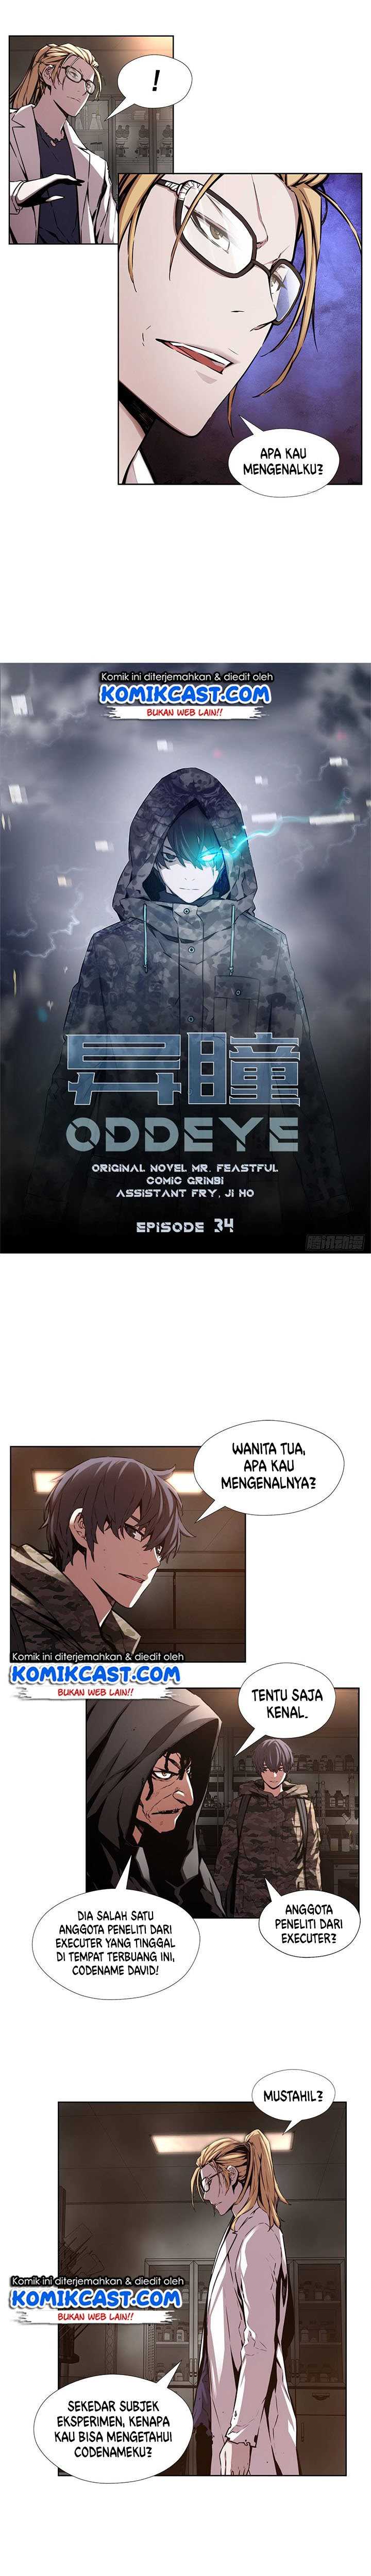 OddEye Chapter 34